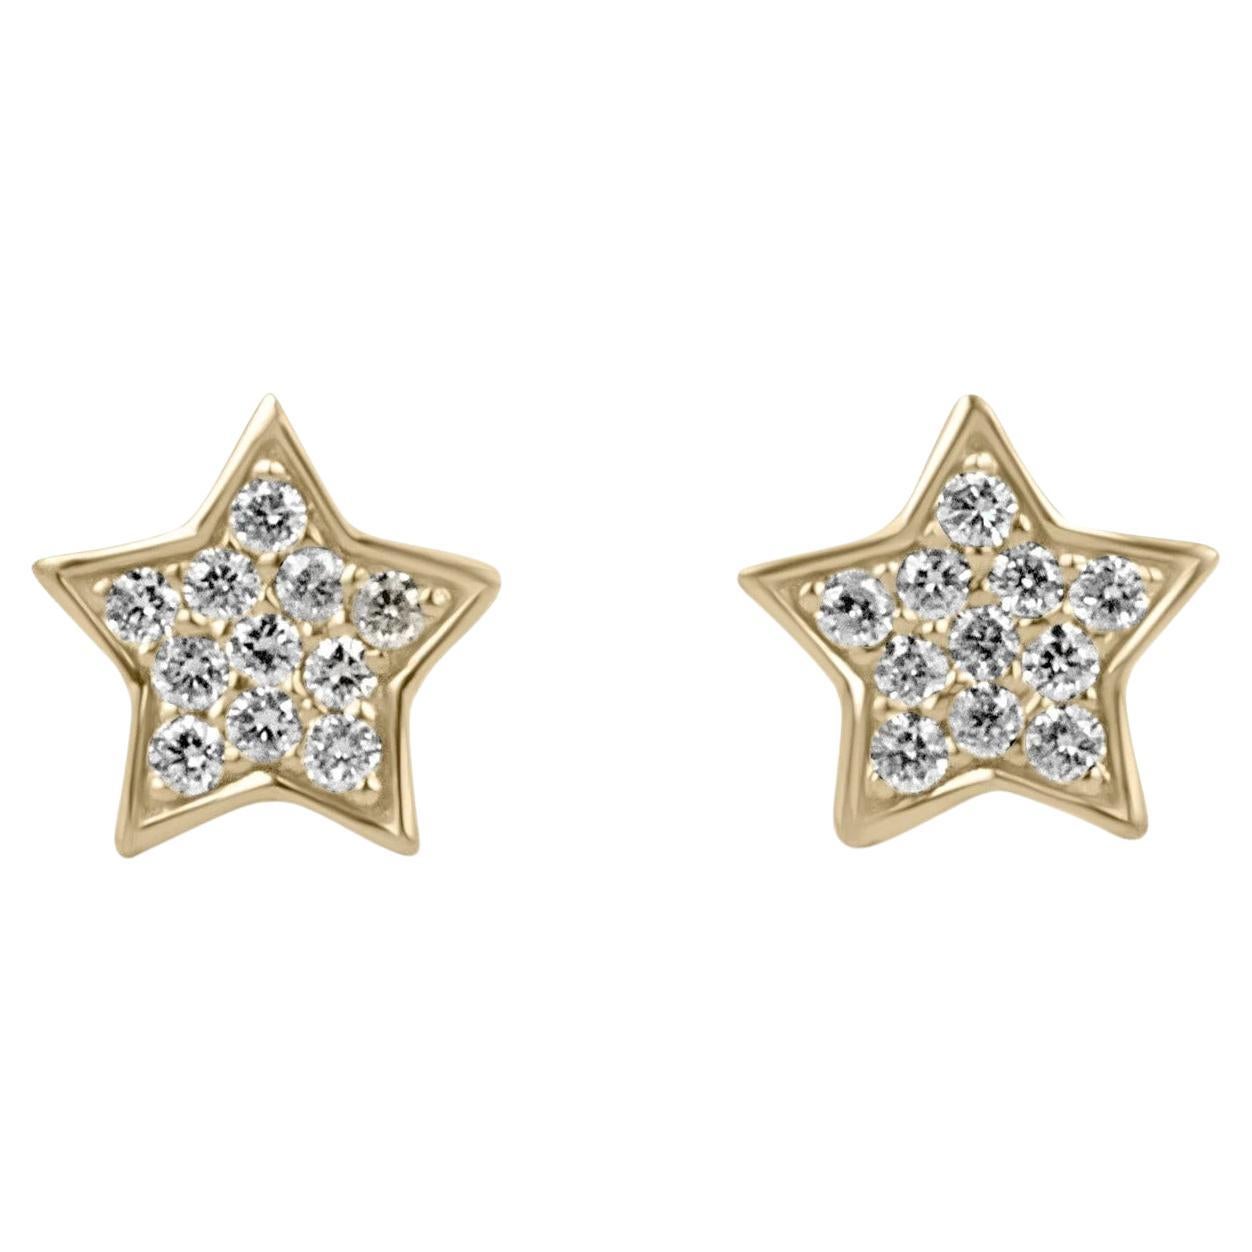 Petite Flat Star Pavé Set Diamond Mini Stud Earrings Yellow Gold 14K For Sale